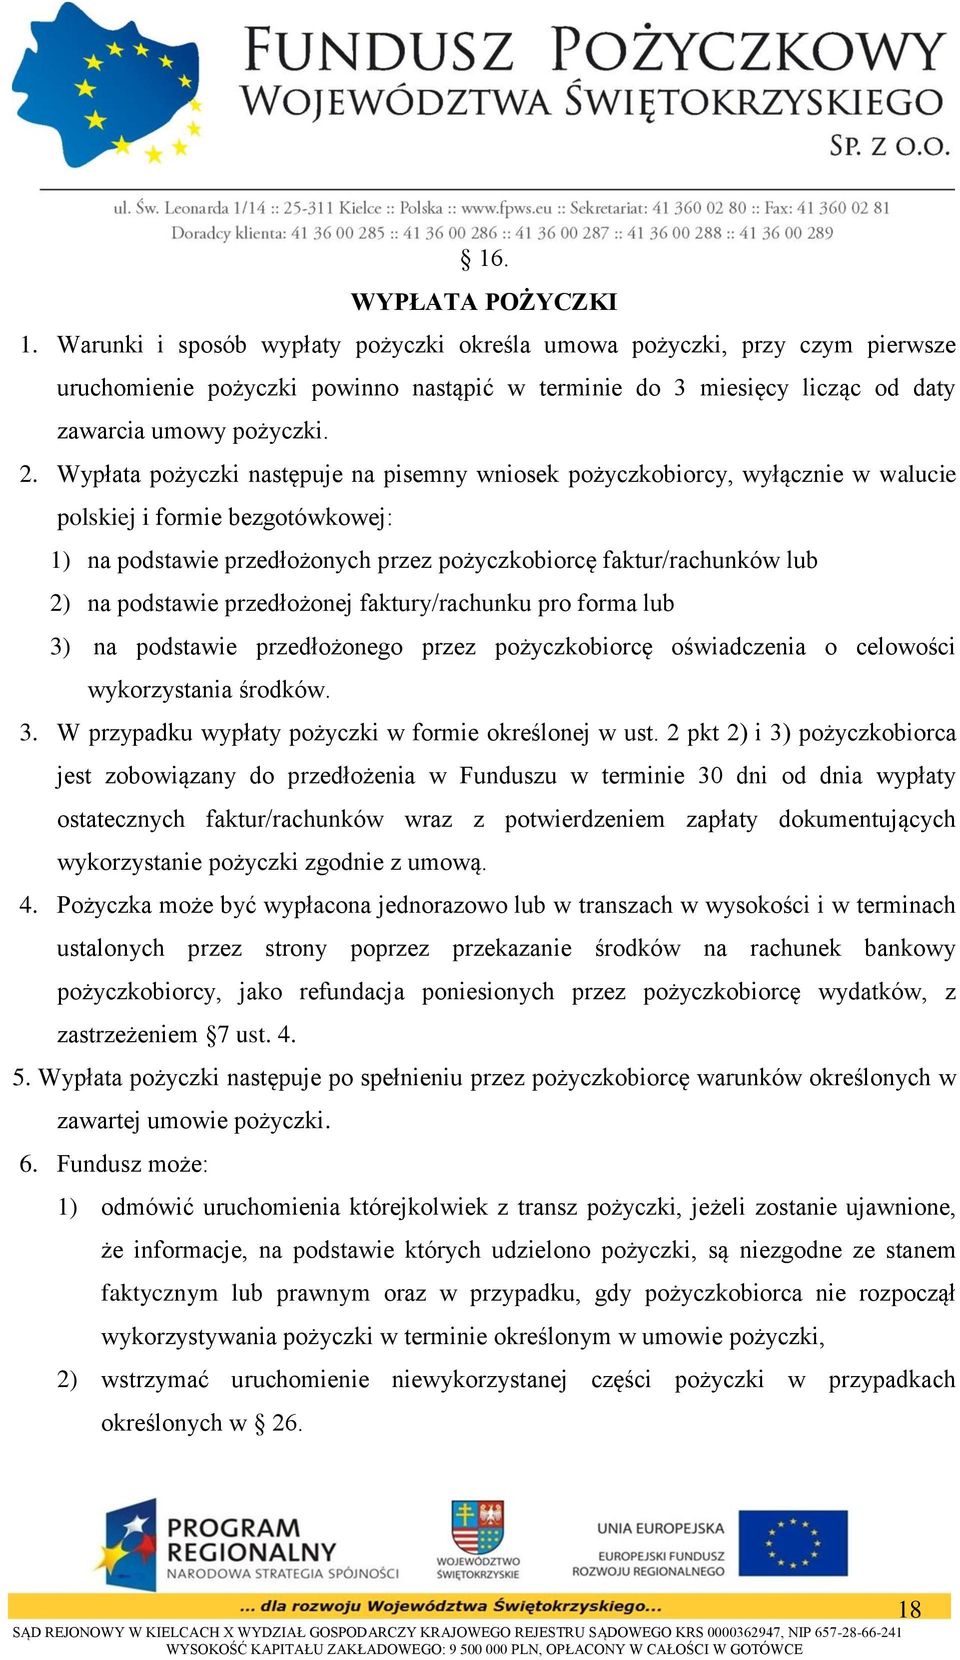 Wypłata pożyczki następuje na pisemny wniosek pożyczkobiorcy, wyłącznie w walucie polskiej i formie bezgotówkowej: 1) na podstawie przedłożonych przez pożyczkobiorcę faktur/rachunków lub 2) na